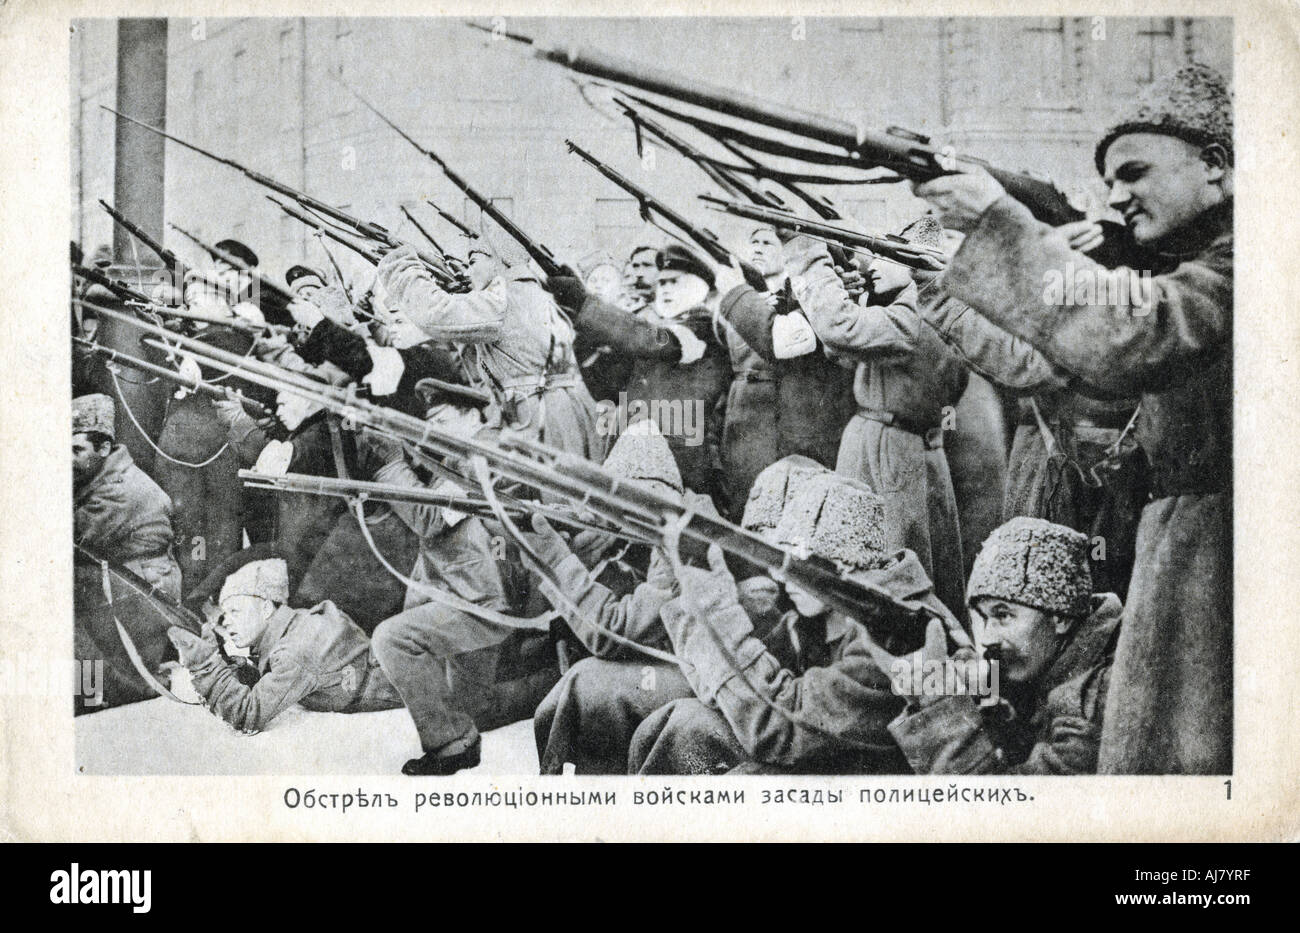 Révolutionnaires armés de fusils, révolution russe, octobre 1917. Artiste : Anon Banque D'Images